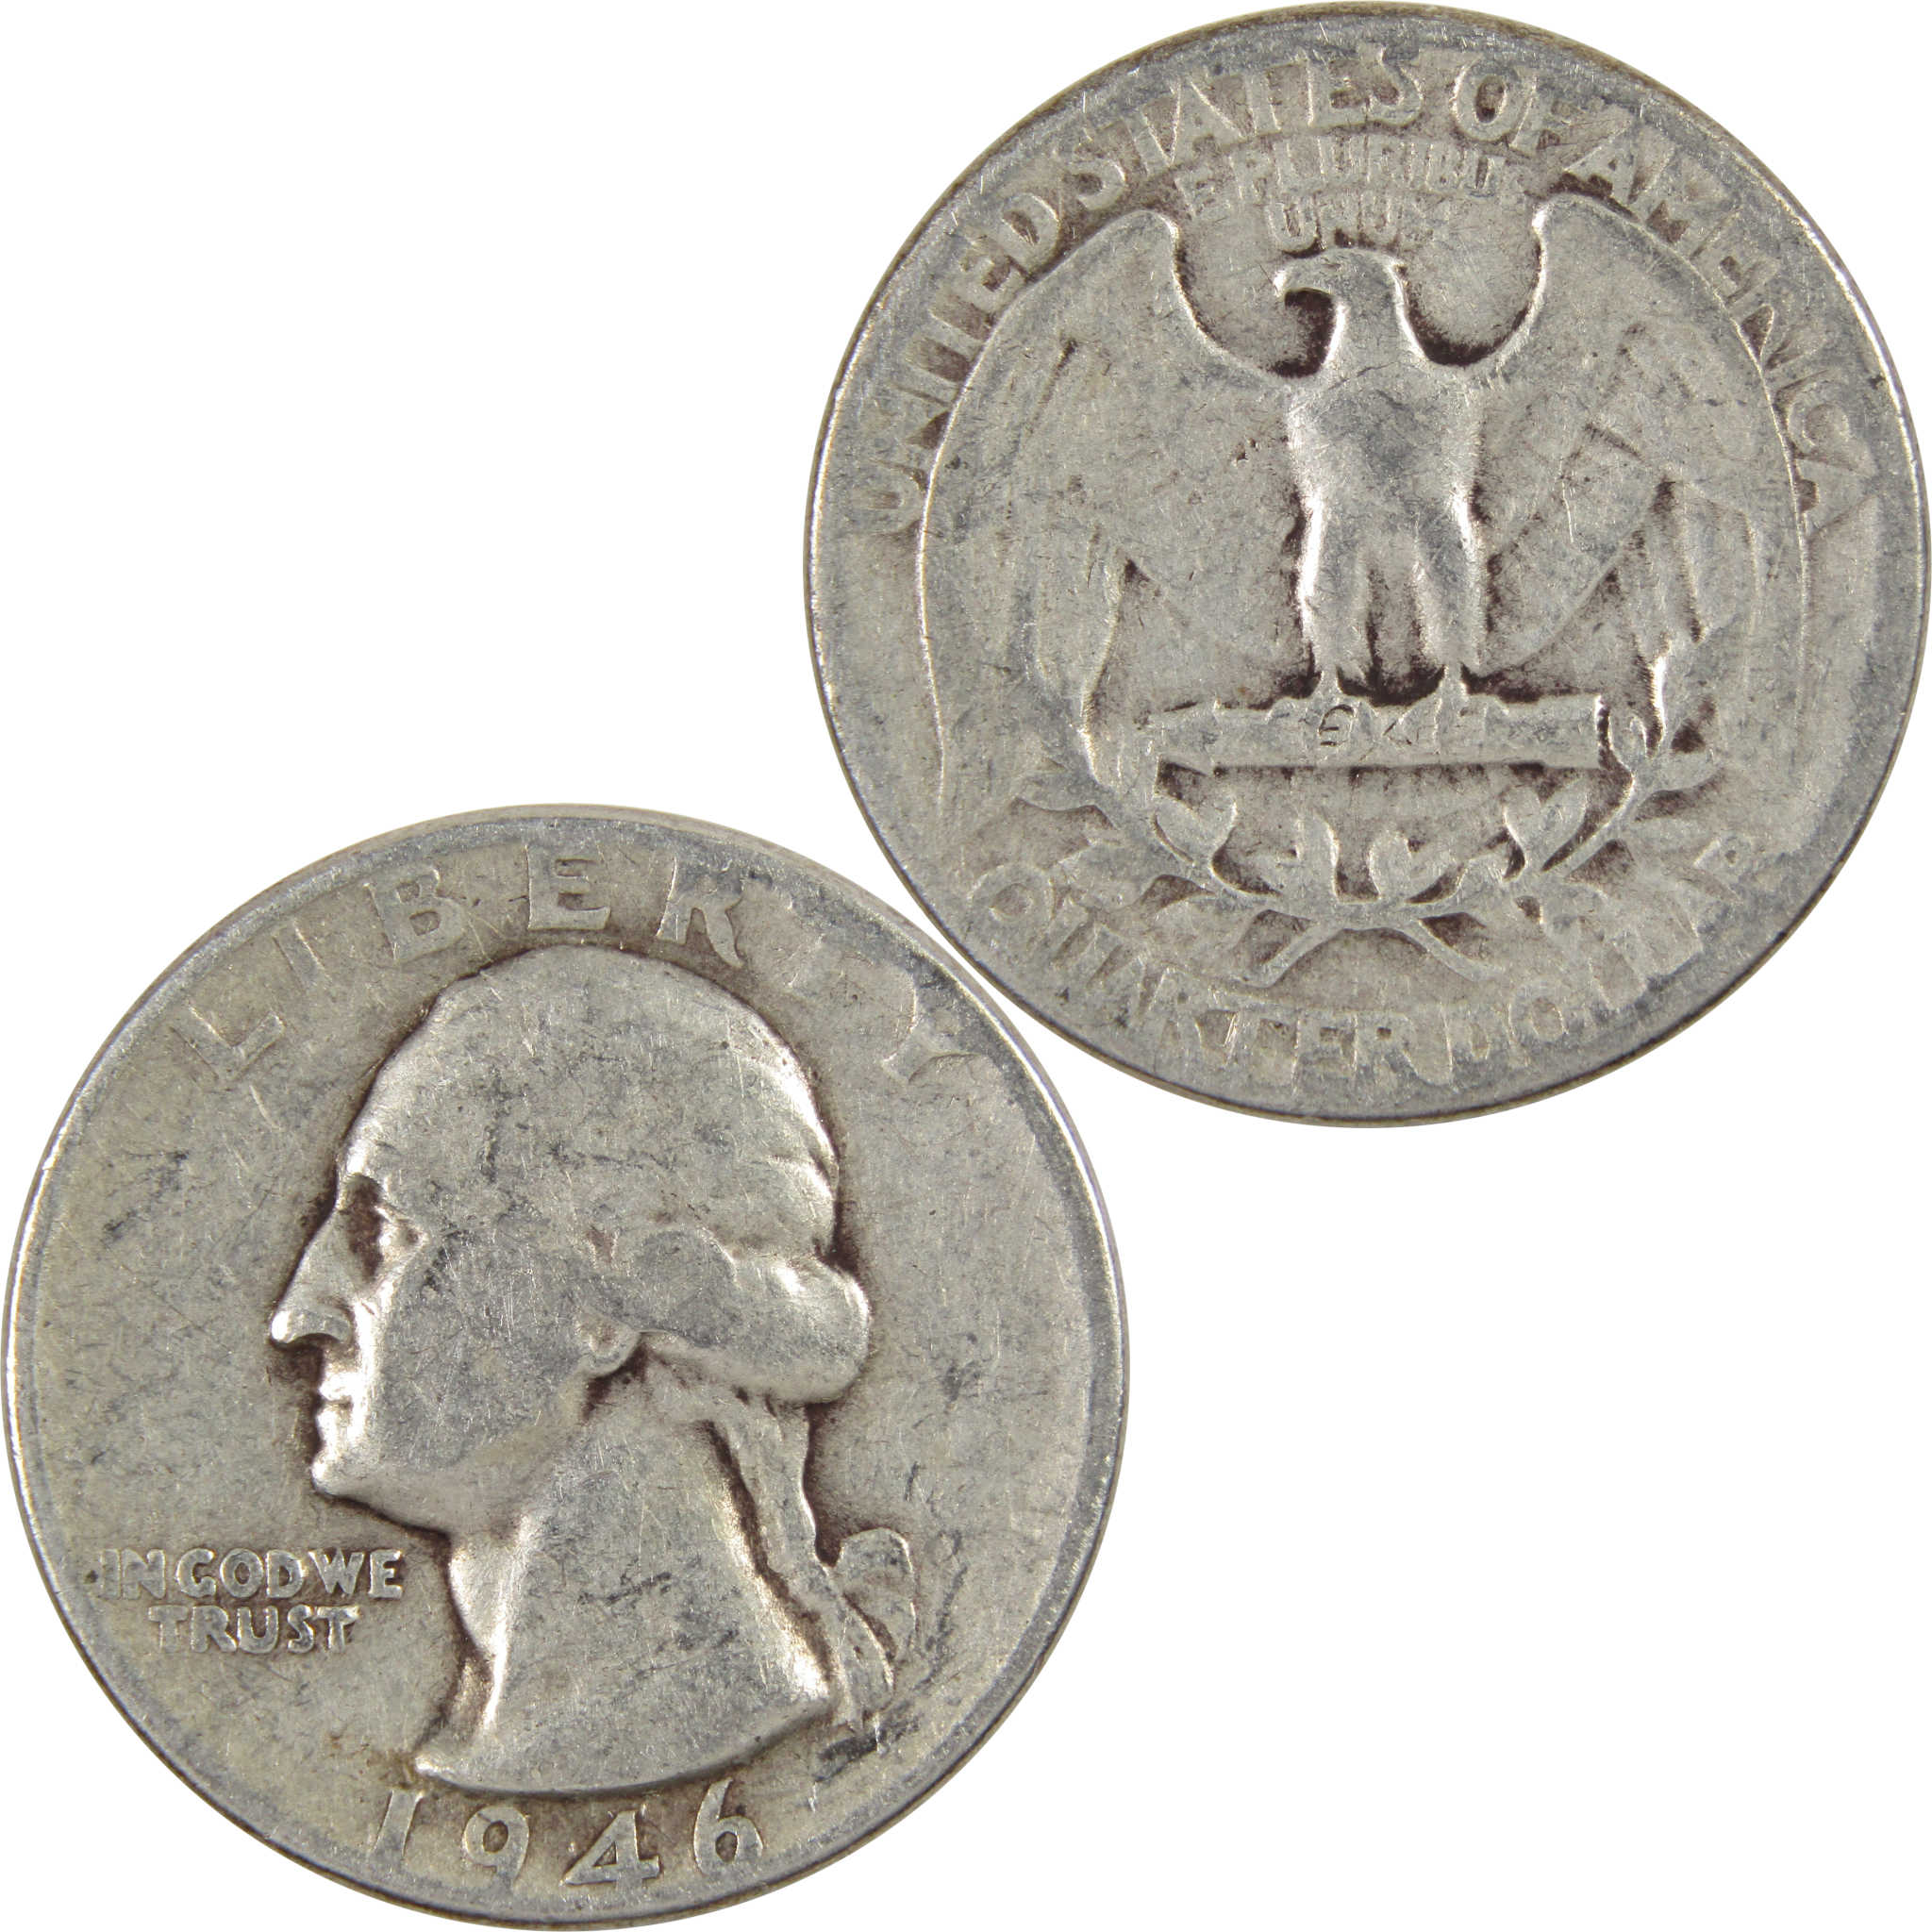 1946 Washington Quarter AG About Good 90% Silver 25c Coin